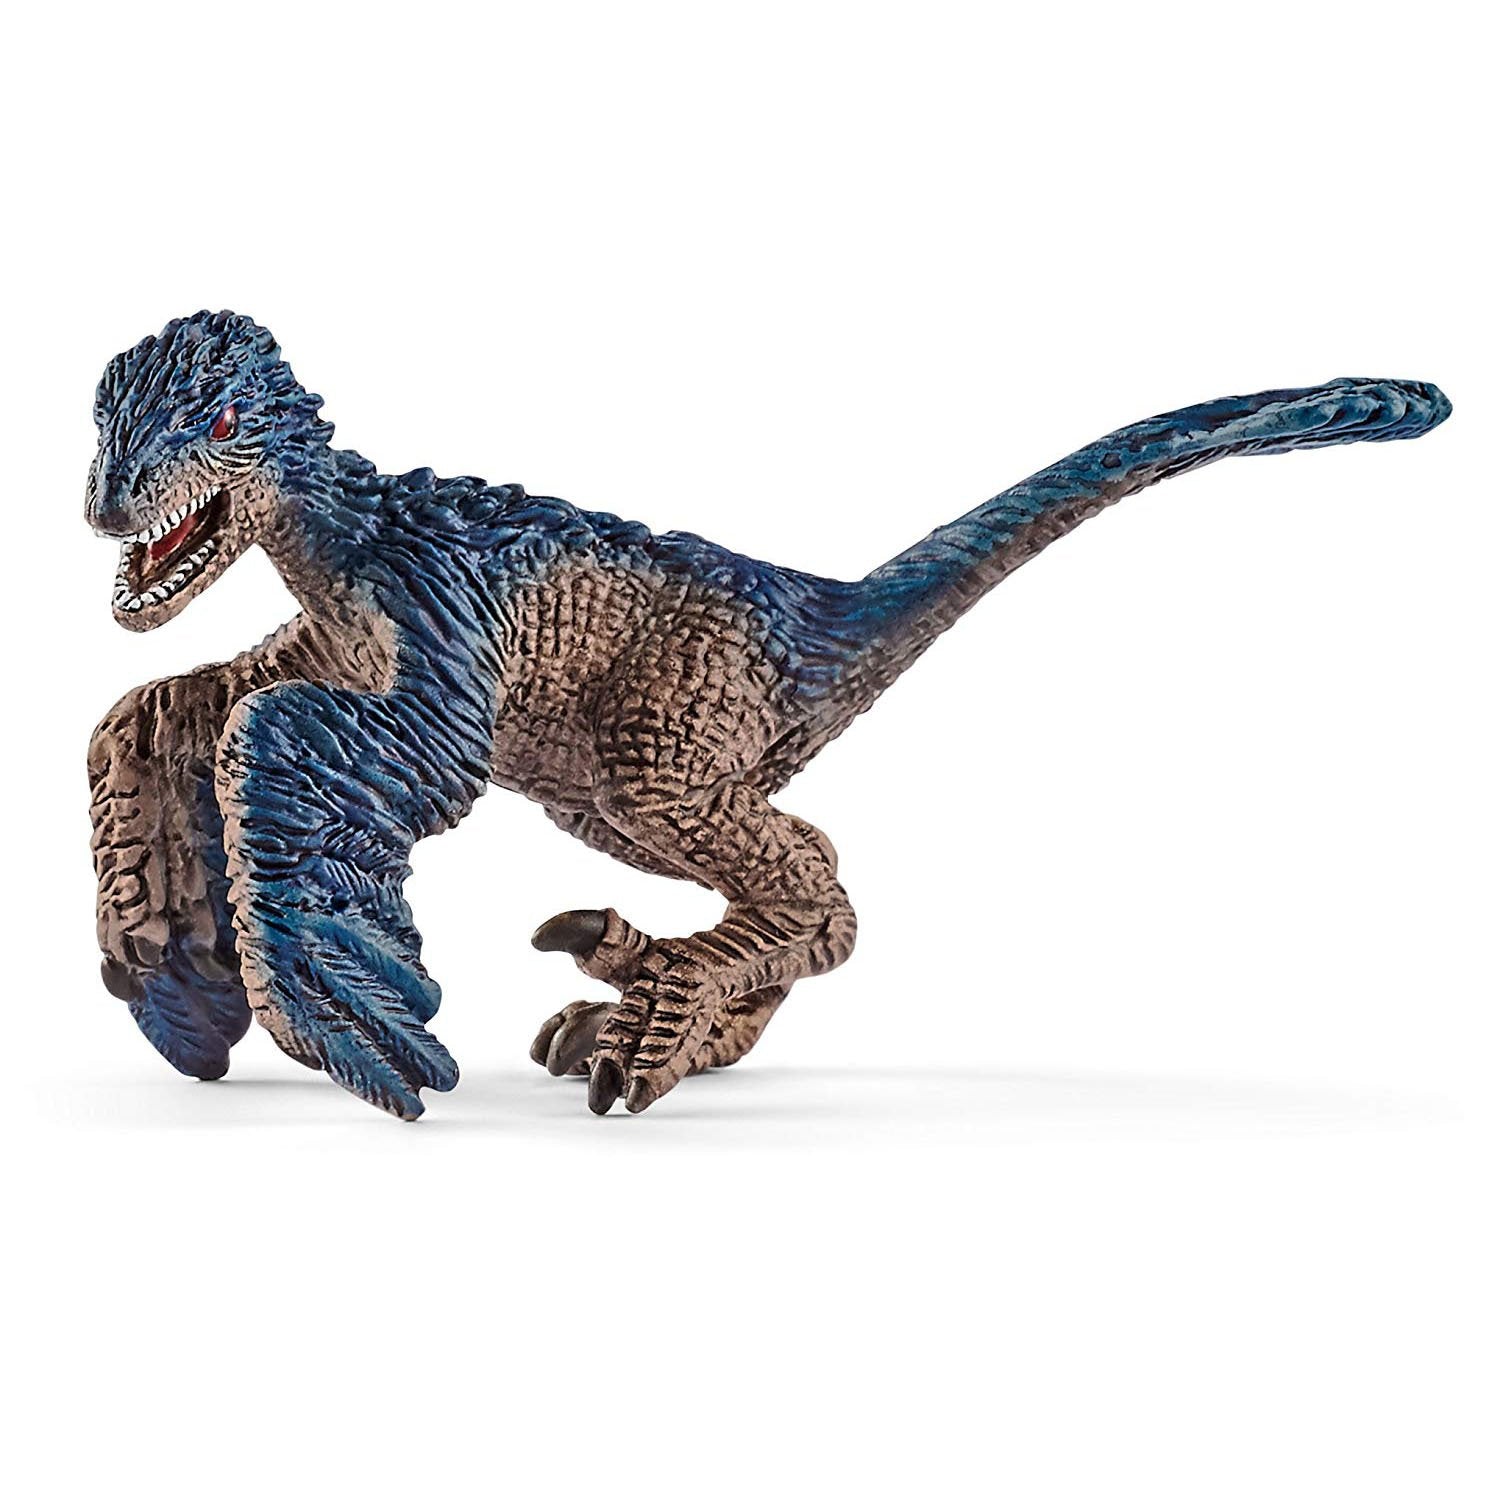 Schleich Dinosaurs Utahraptor Mini Toy Figure